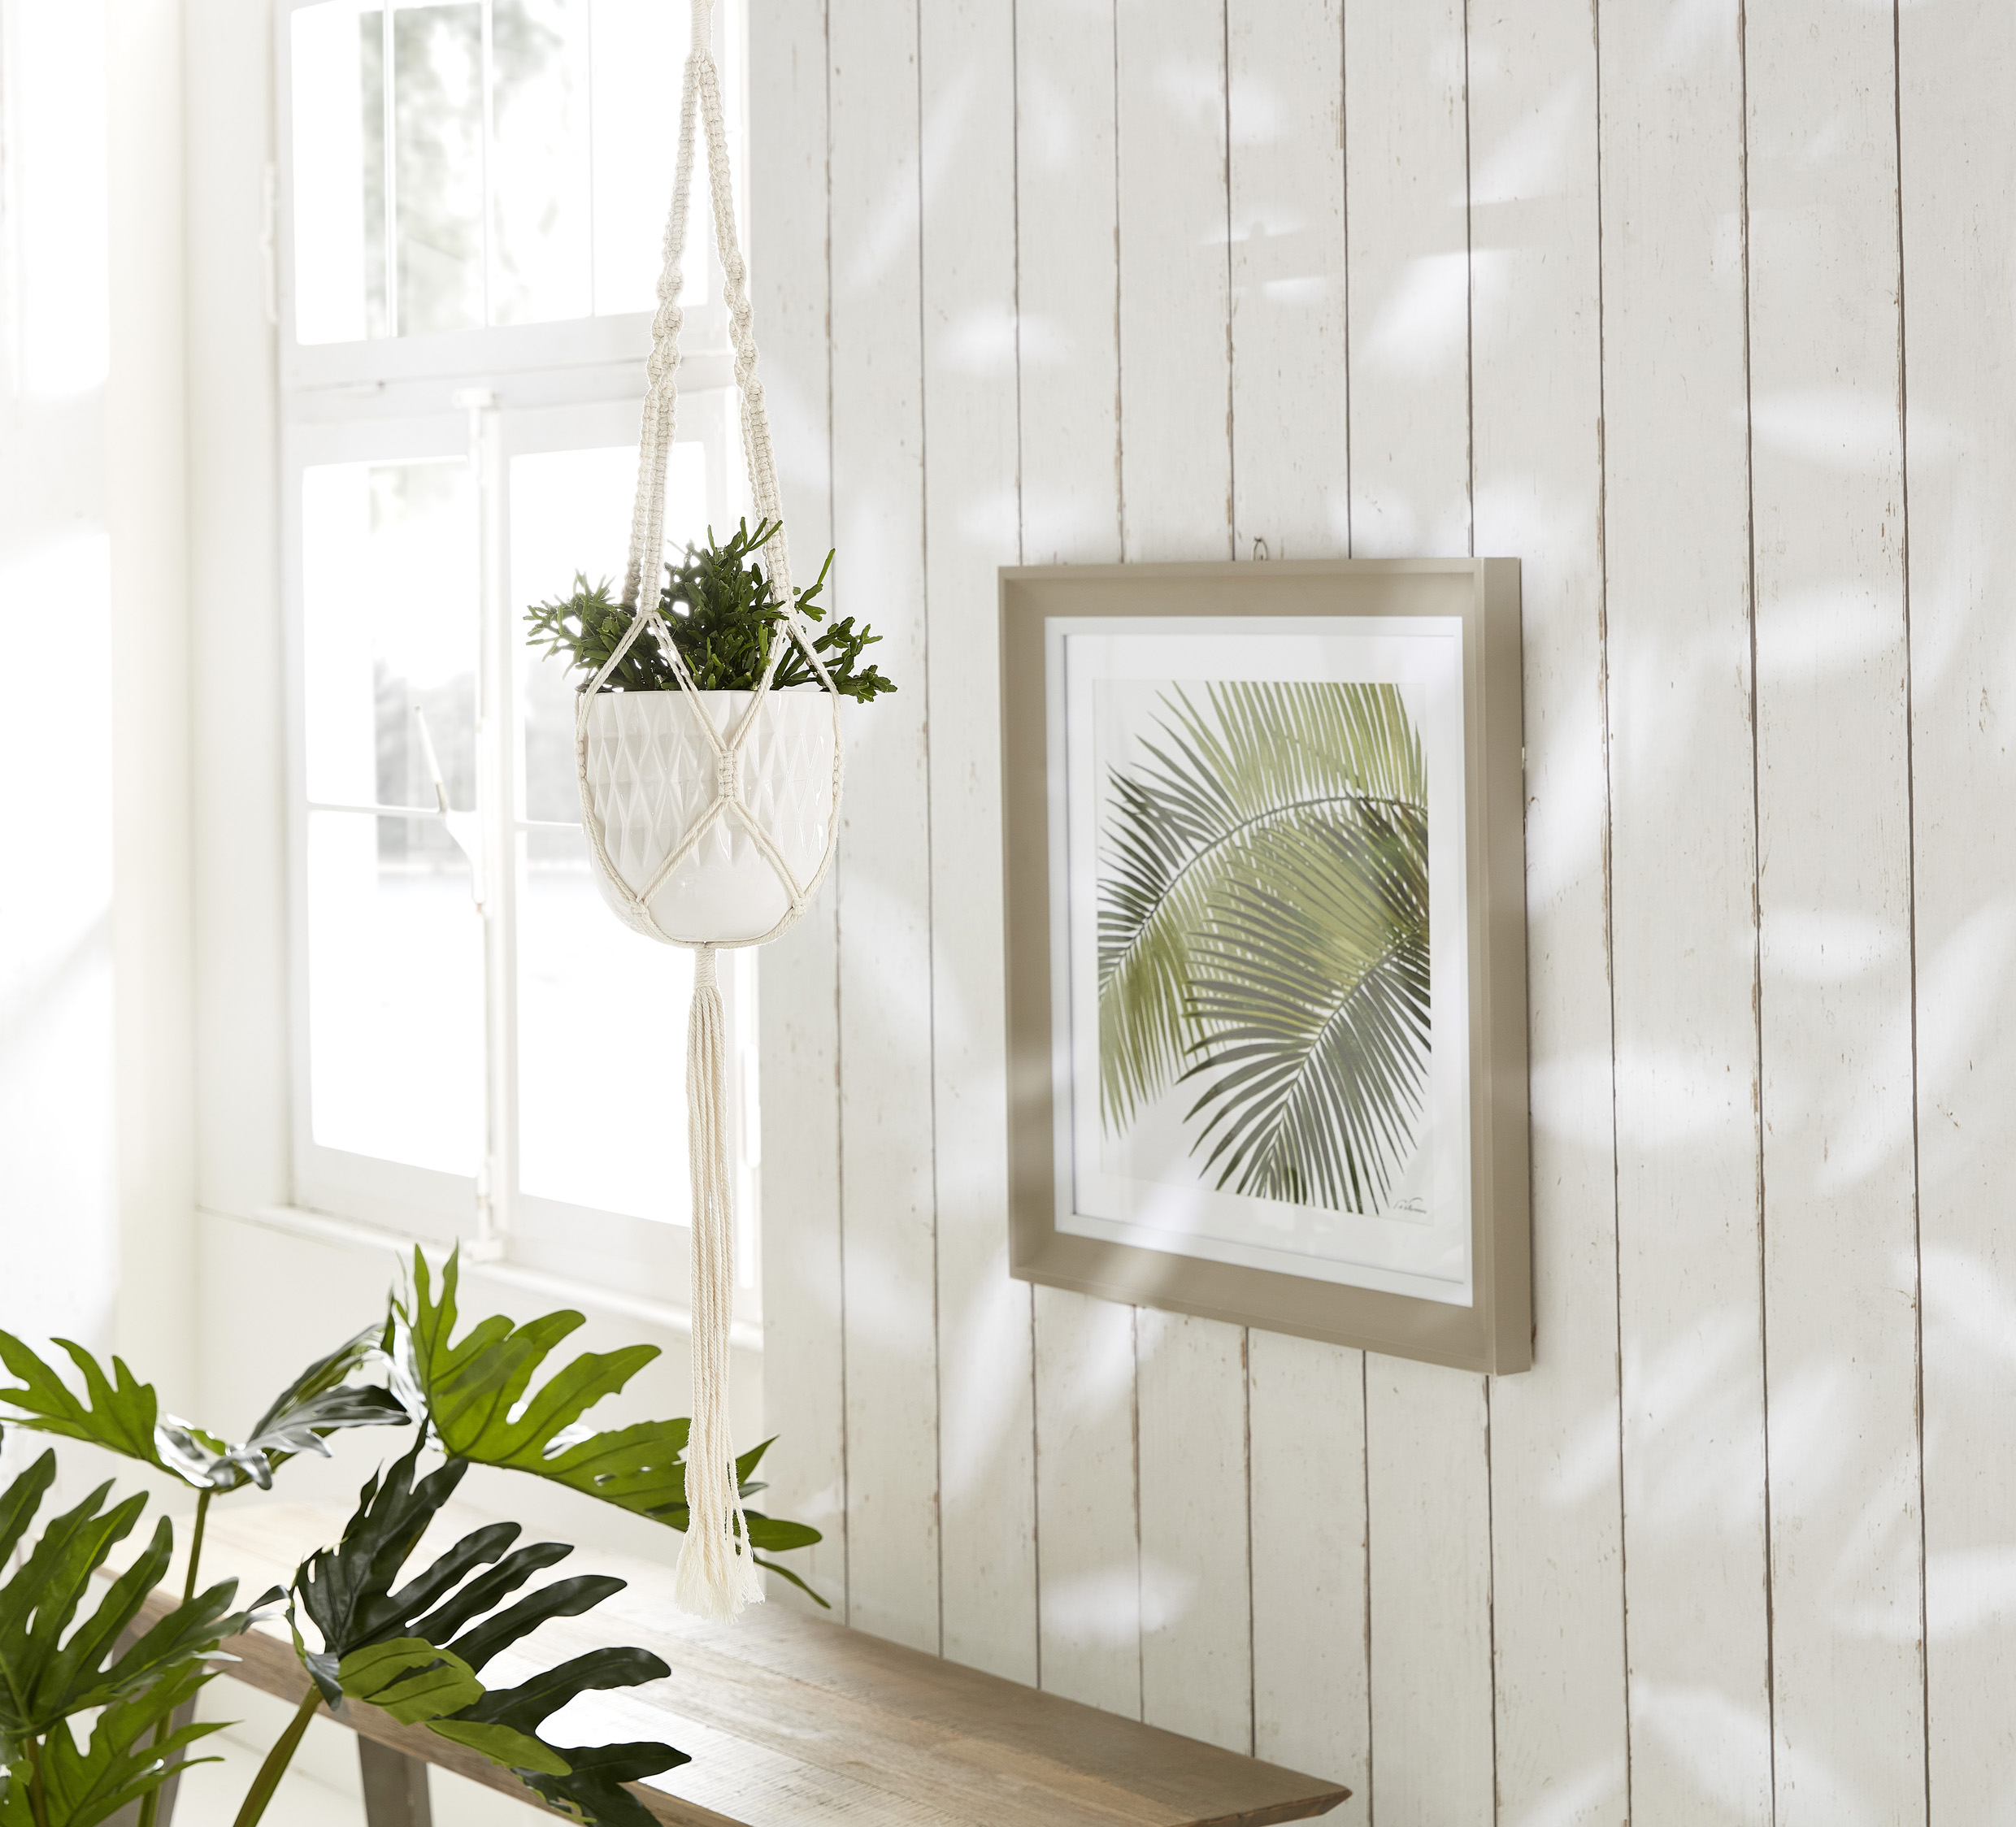 Wandbild mit Palmwedel, davor in einem Topf hängende Zimmerpflanze.